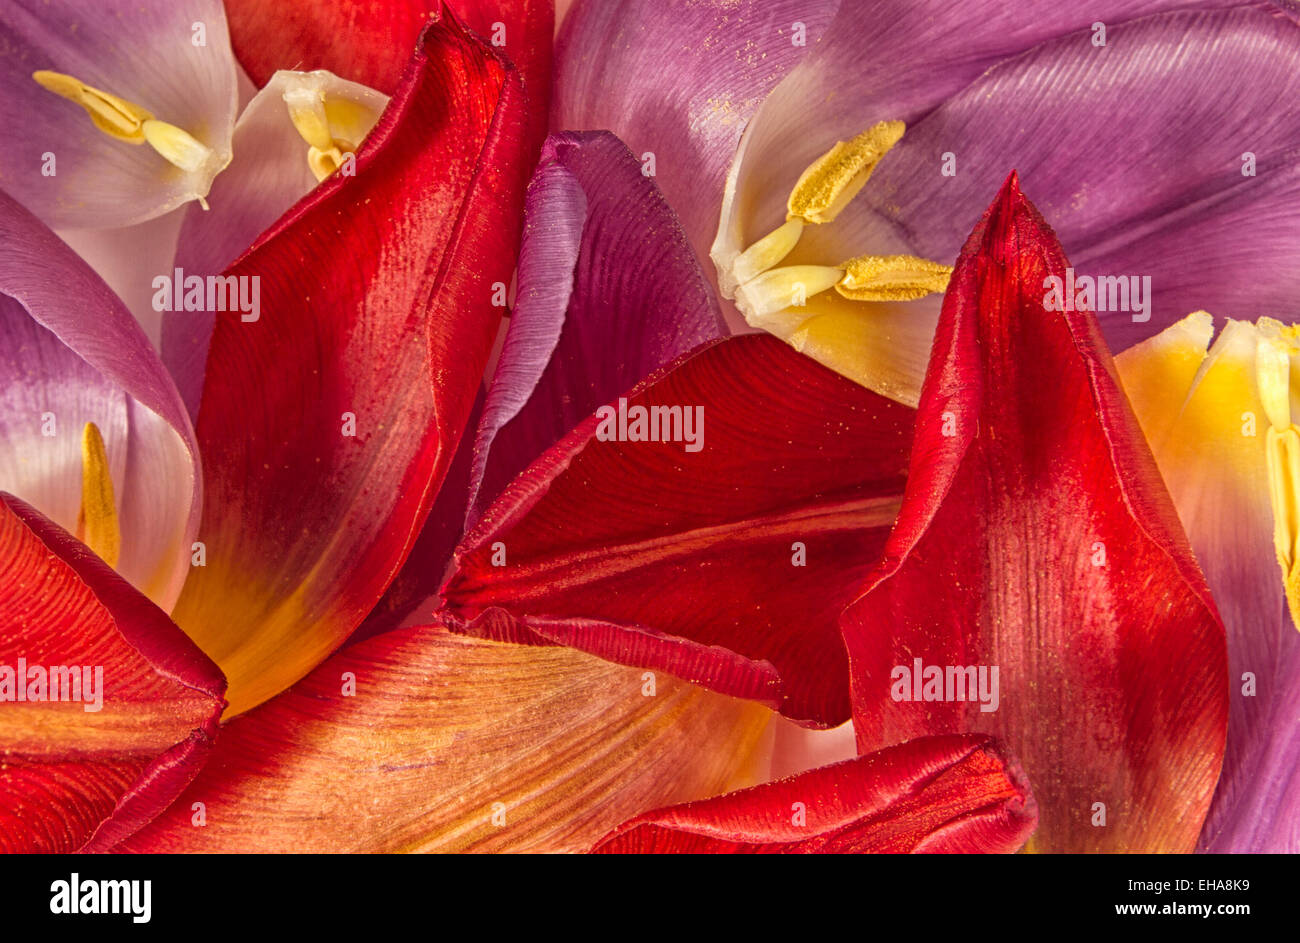 Tombée de la beauté. Même quand la beauté des fleurs est passé, les tulipes ont encore la beauté dans la richesse de leurs pétales. Banque D'Images